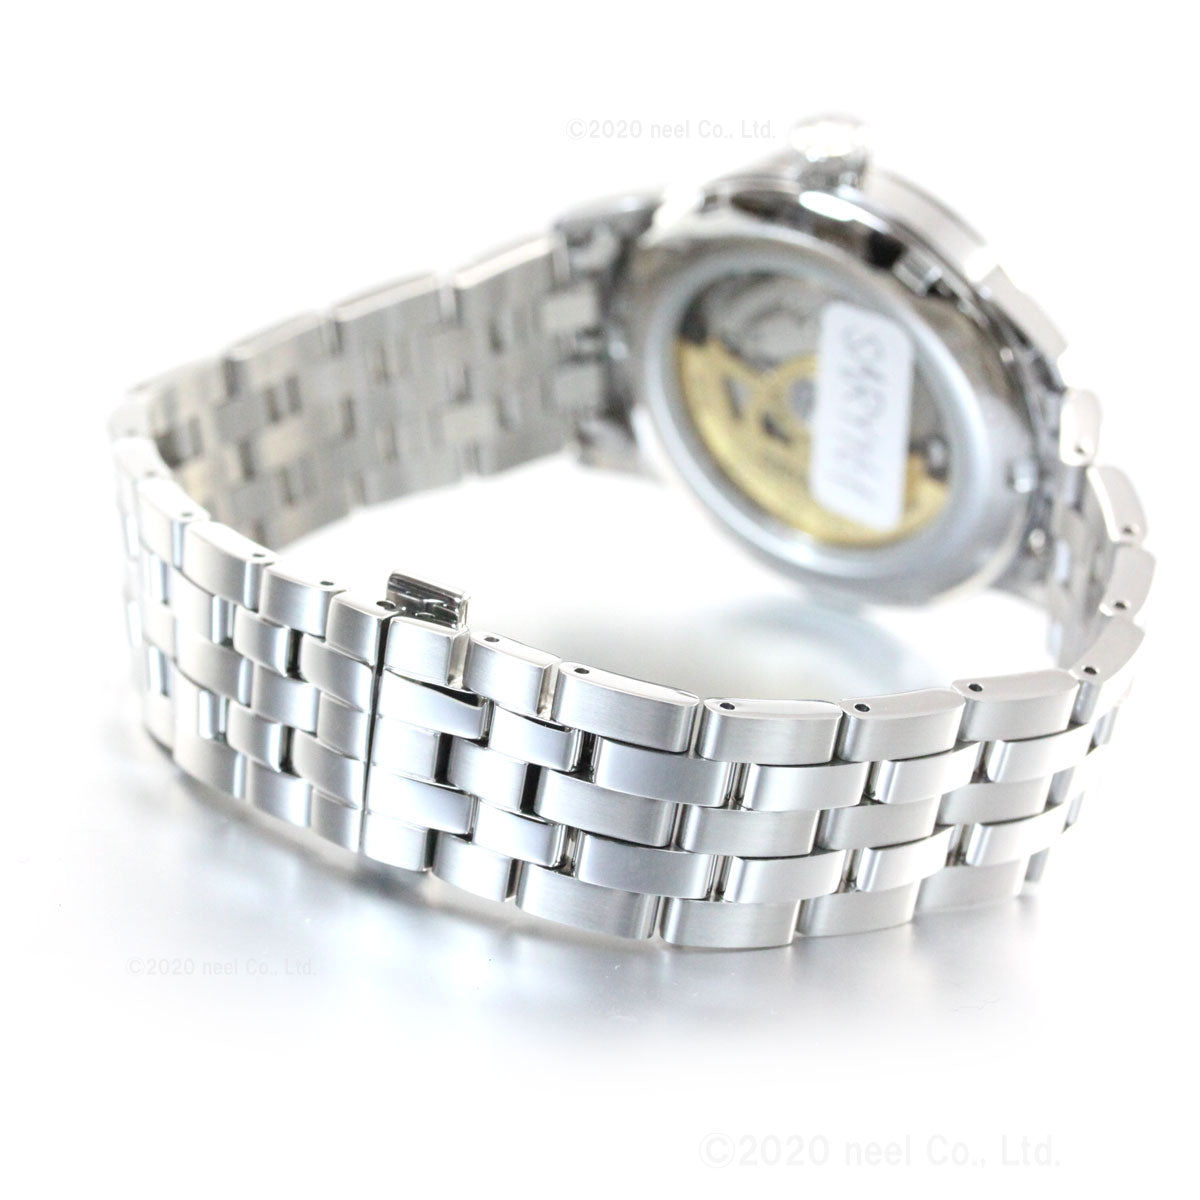 セイコー プレザージュ 自動巻き メカニカル メンズ 腕時計 カクテル SARY161